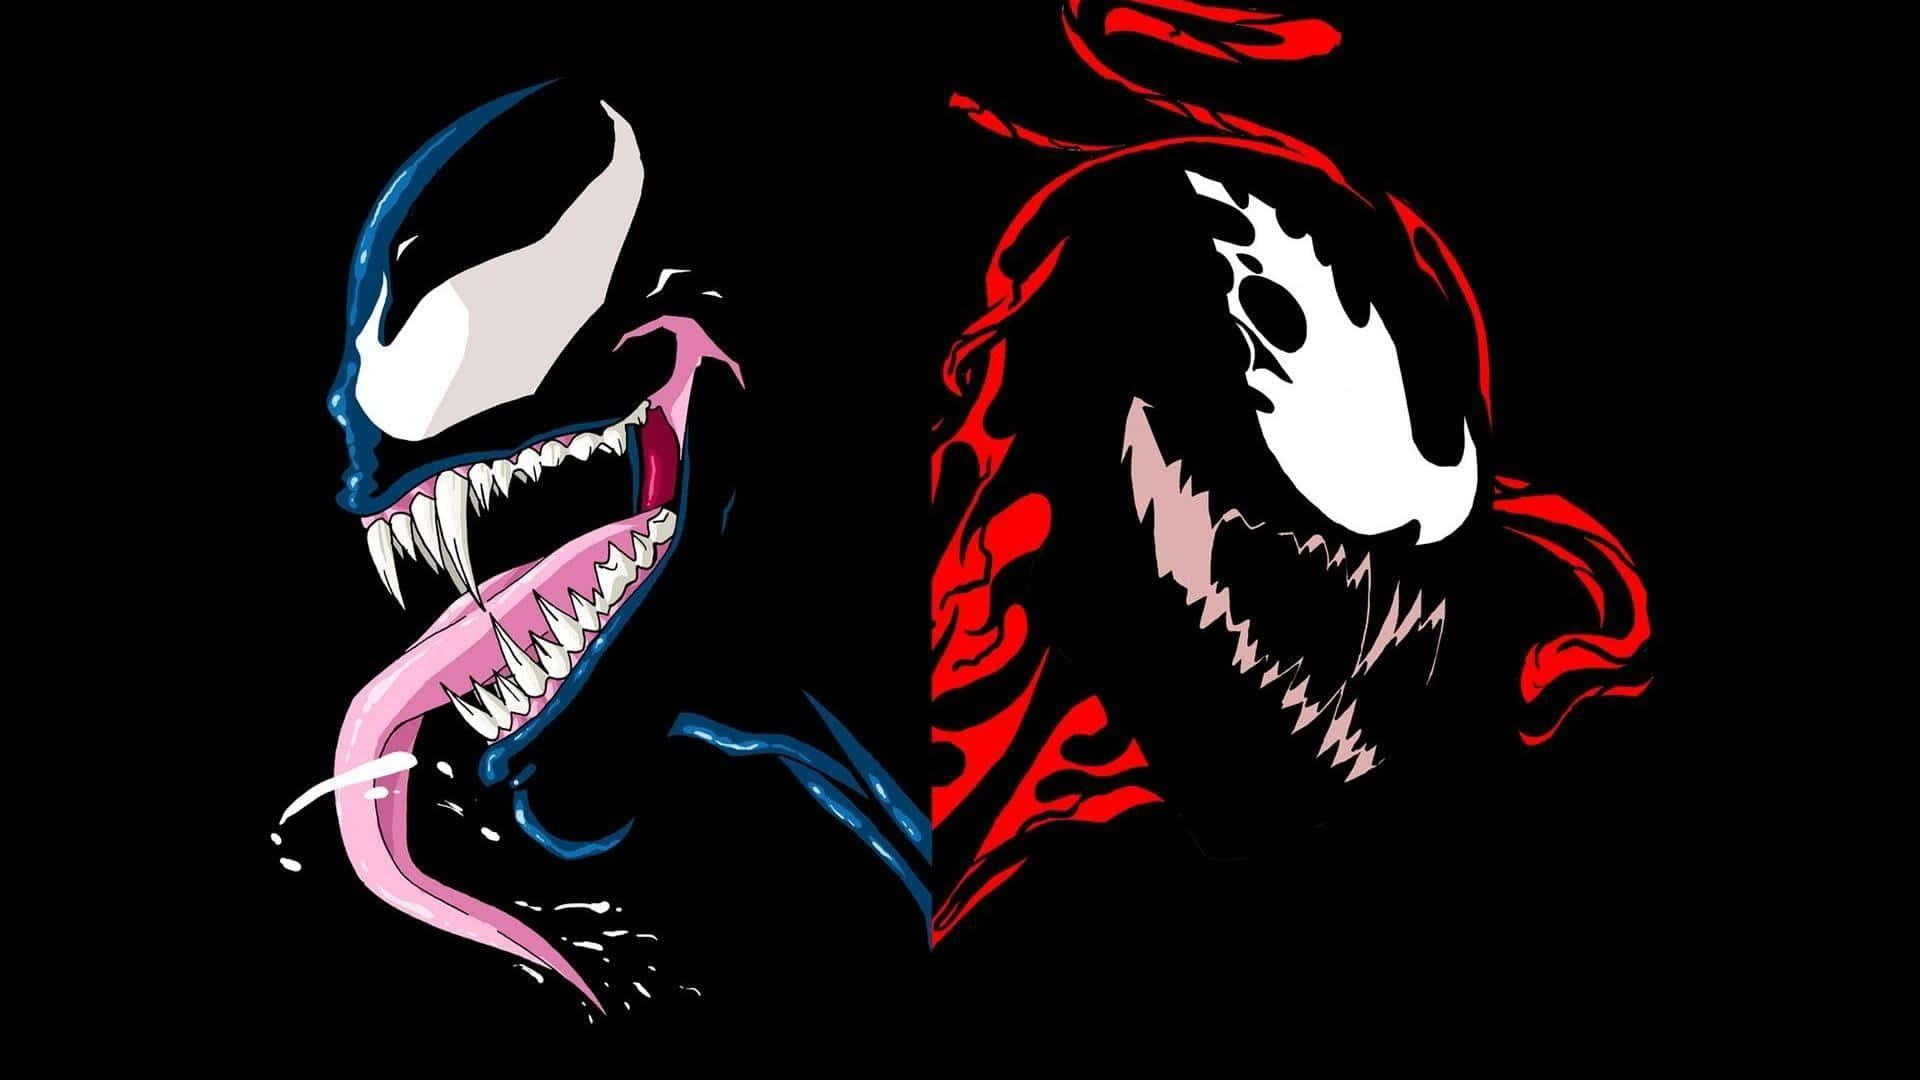 Papelde Parede Do Venom E Do Venom Em Alta Definição. Papel de Parede